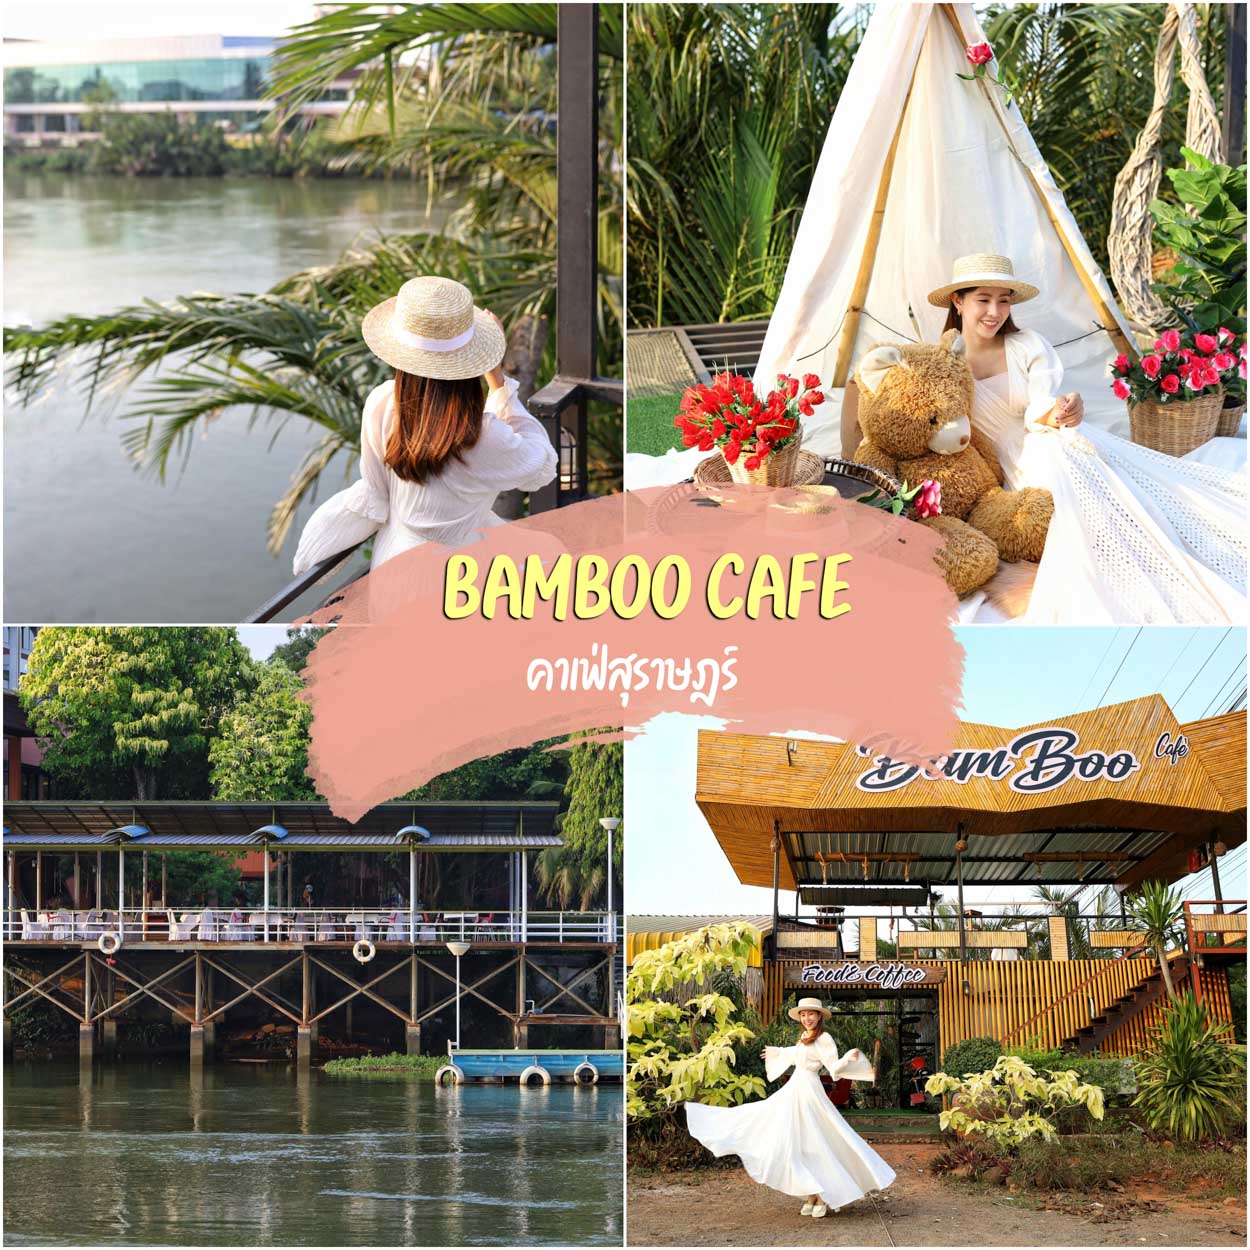 Bamboo cafe food coffee คาเฟ่สุราษฎร์ บรรยากาศหลักล้าน ตรงข้ามริมน้ำวังใต้